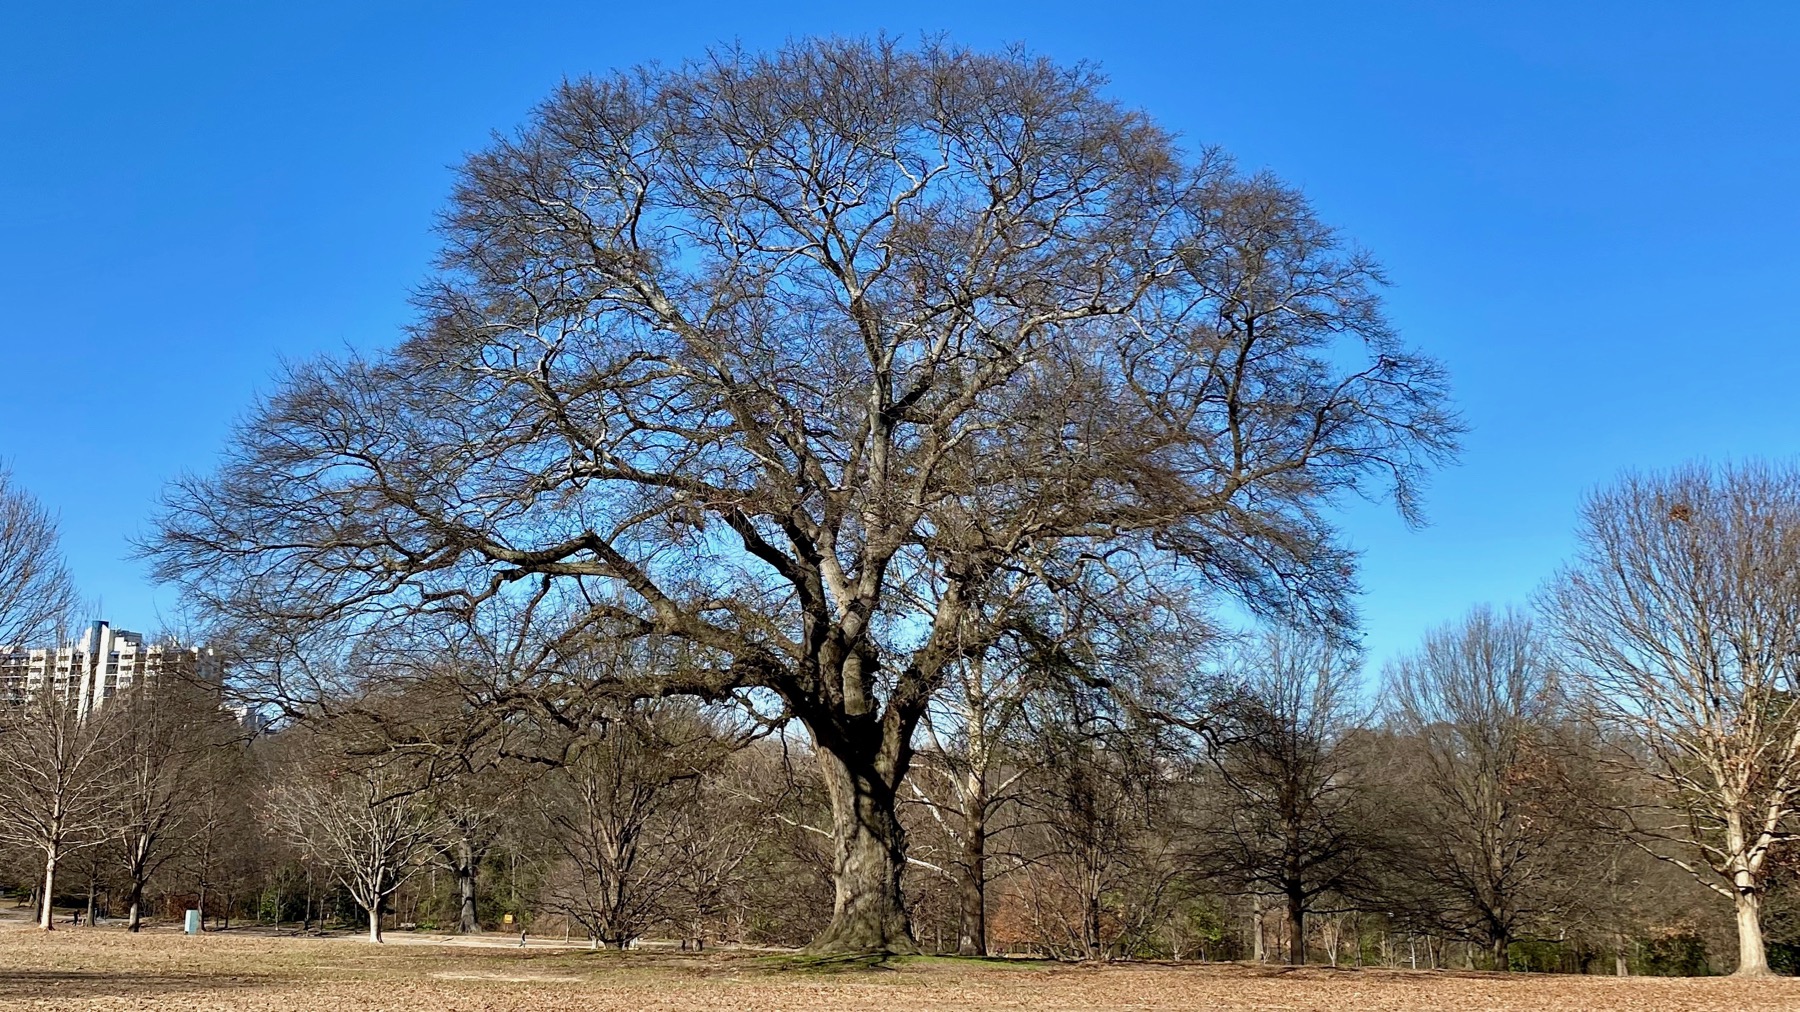 Stately oak